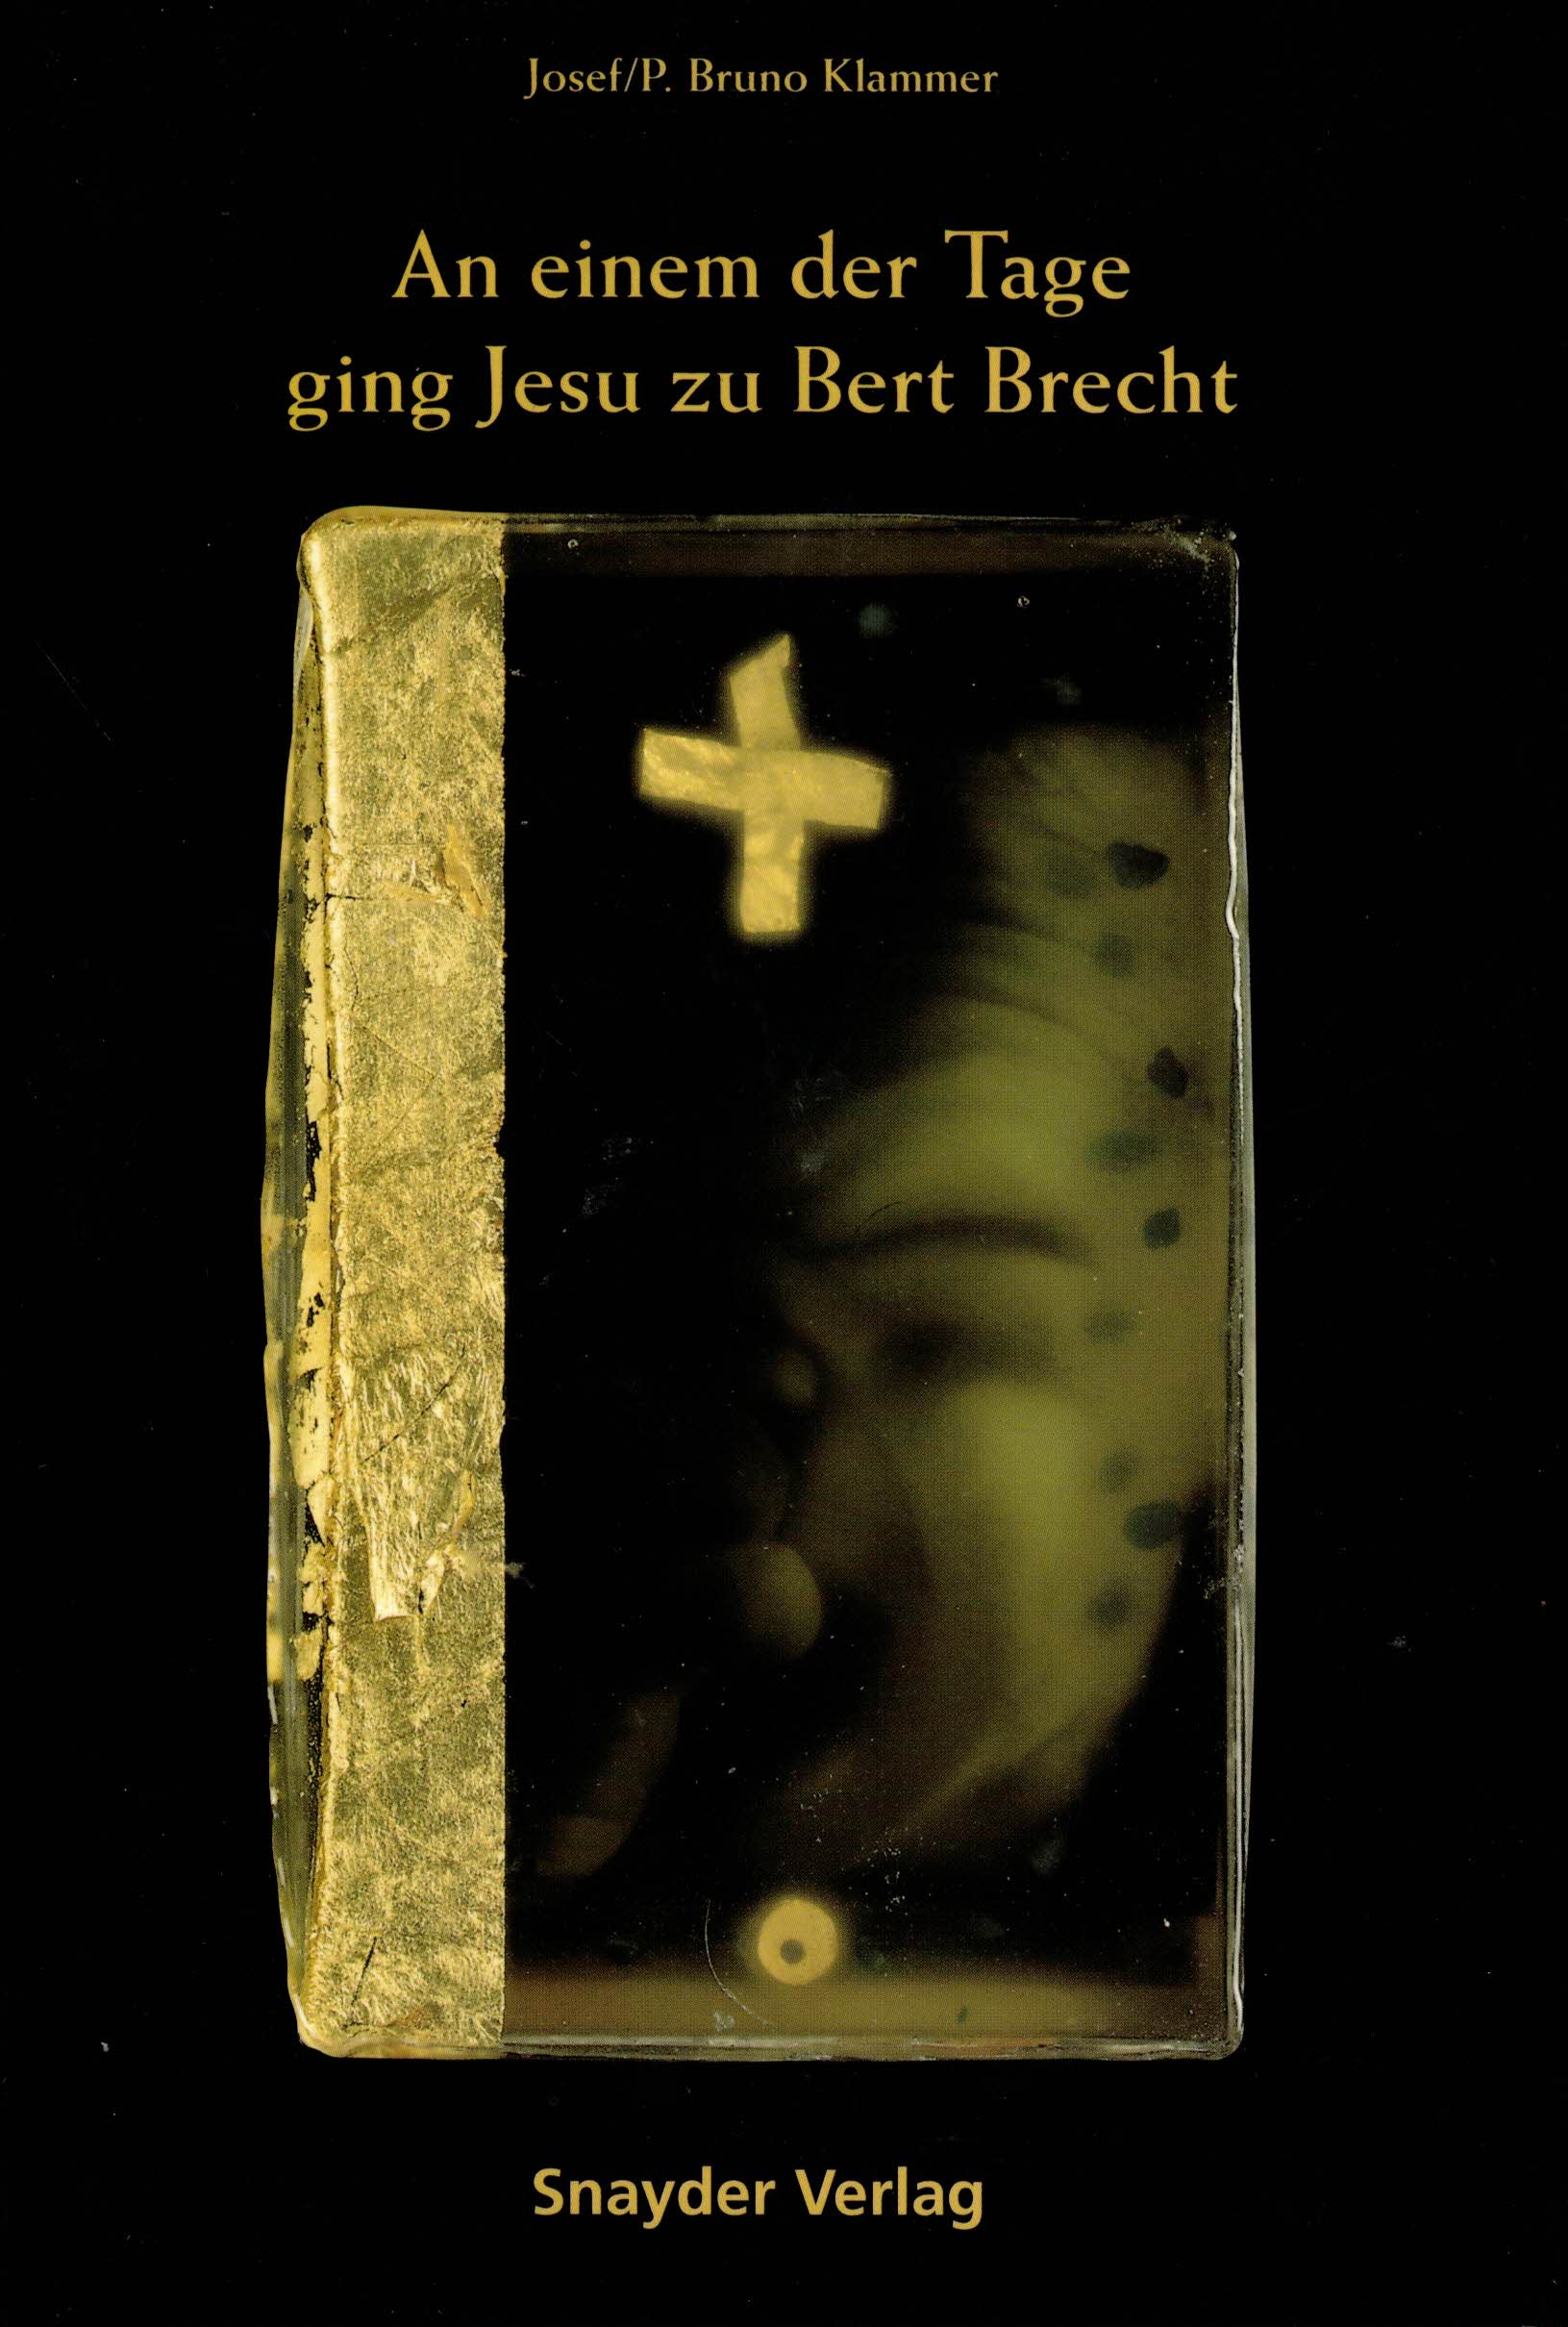 An einem der Tage ging Jesu zu Bert Brecht - Klammer, Josef; P. Bruno